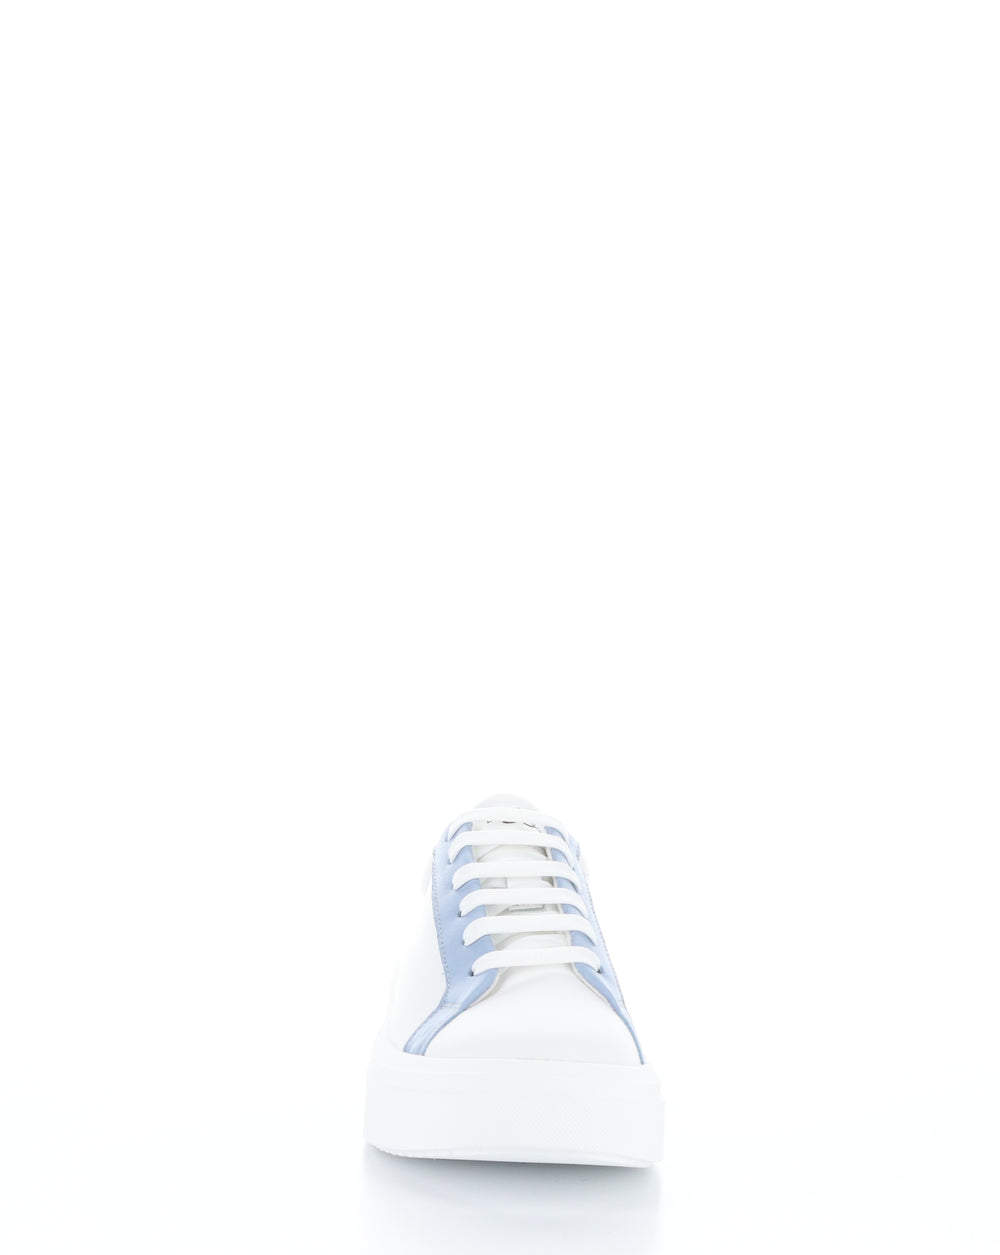 FUZI WHITE/SKY/YELLOW Lace-up Shoes